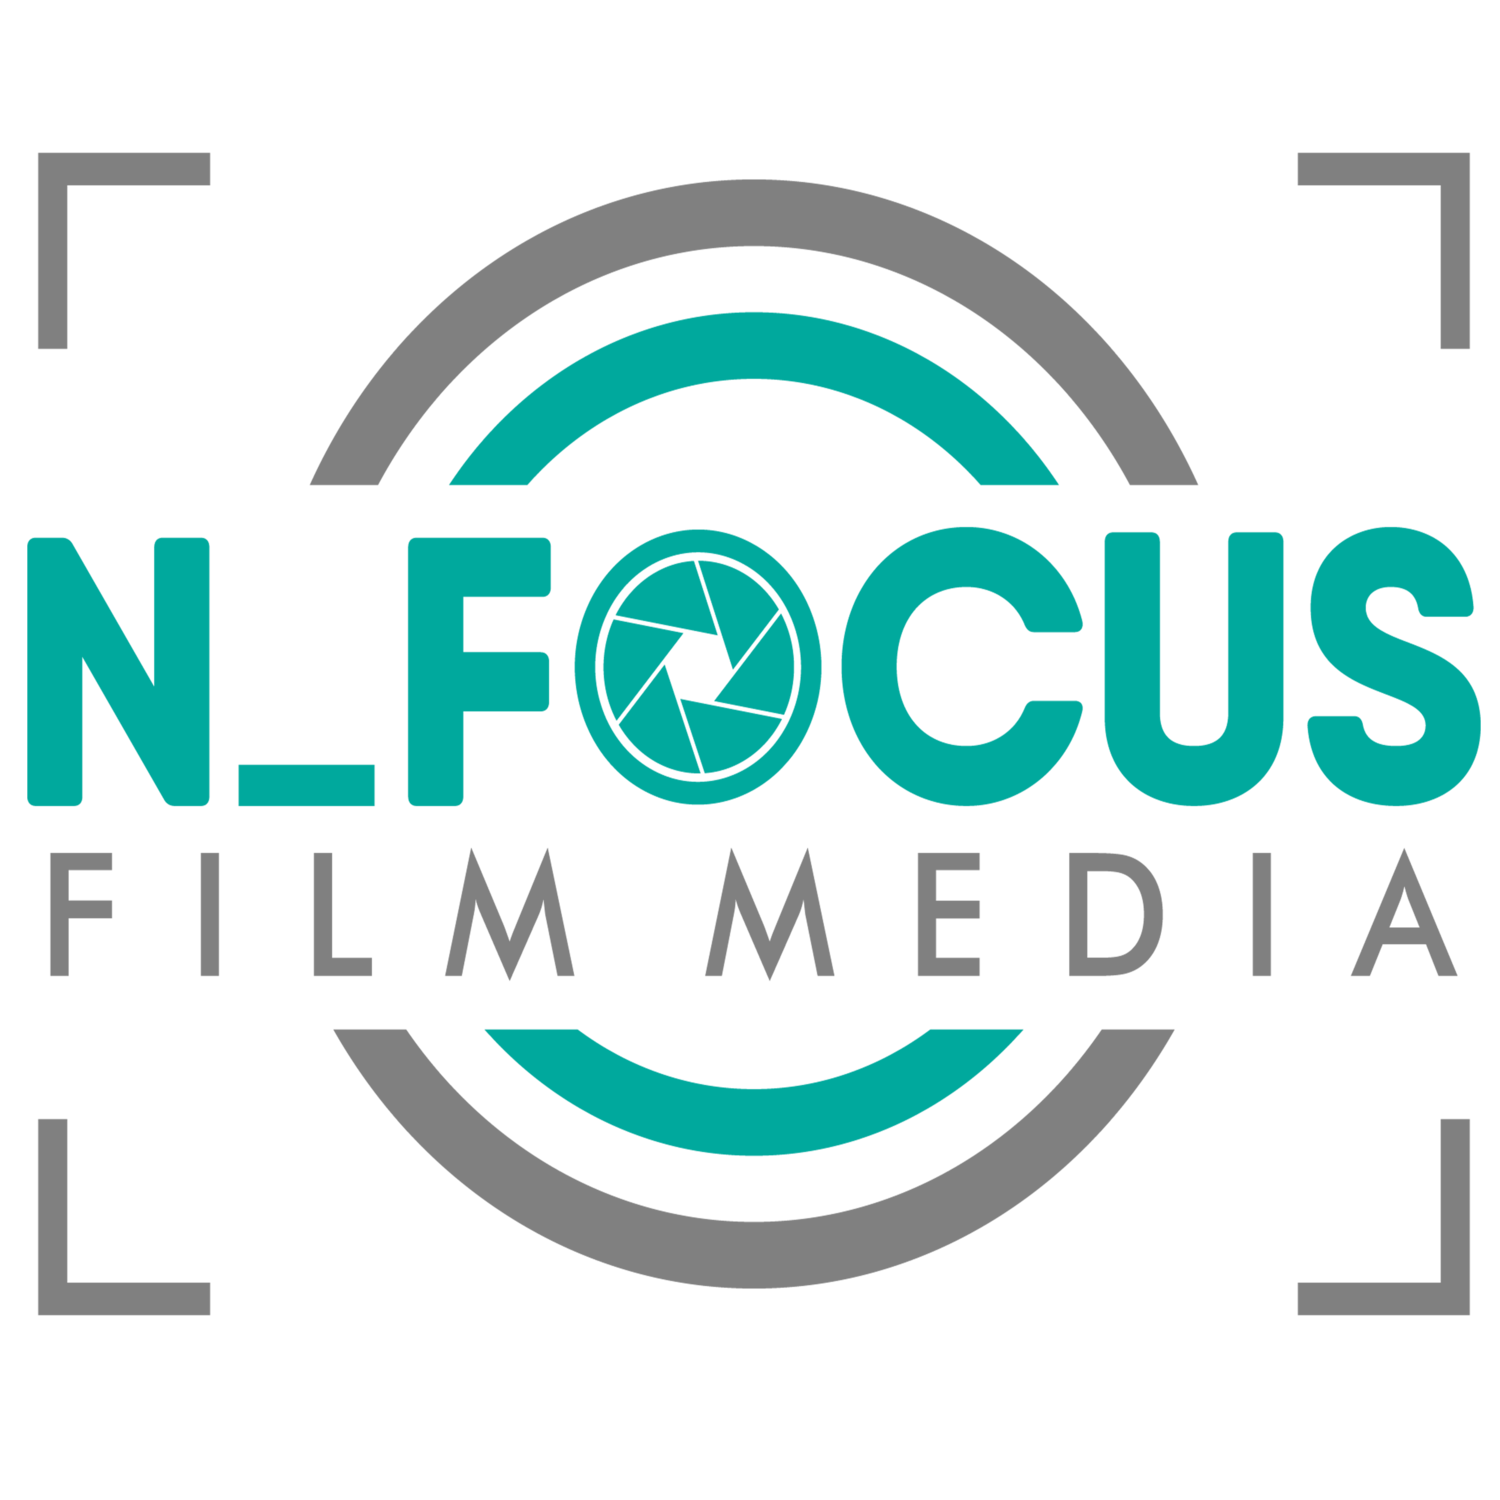 NFocus Film Media